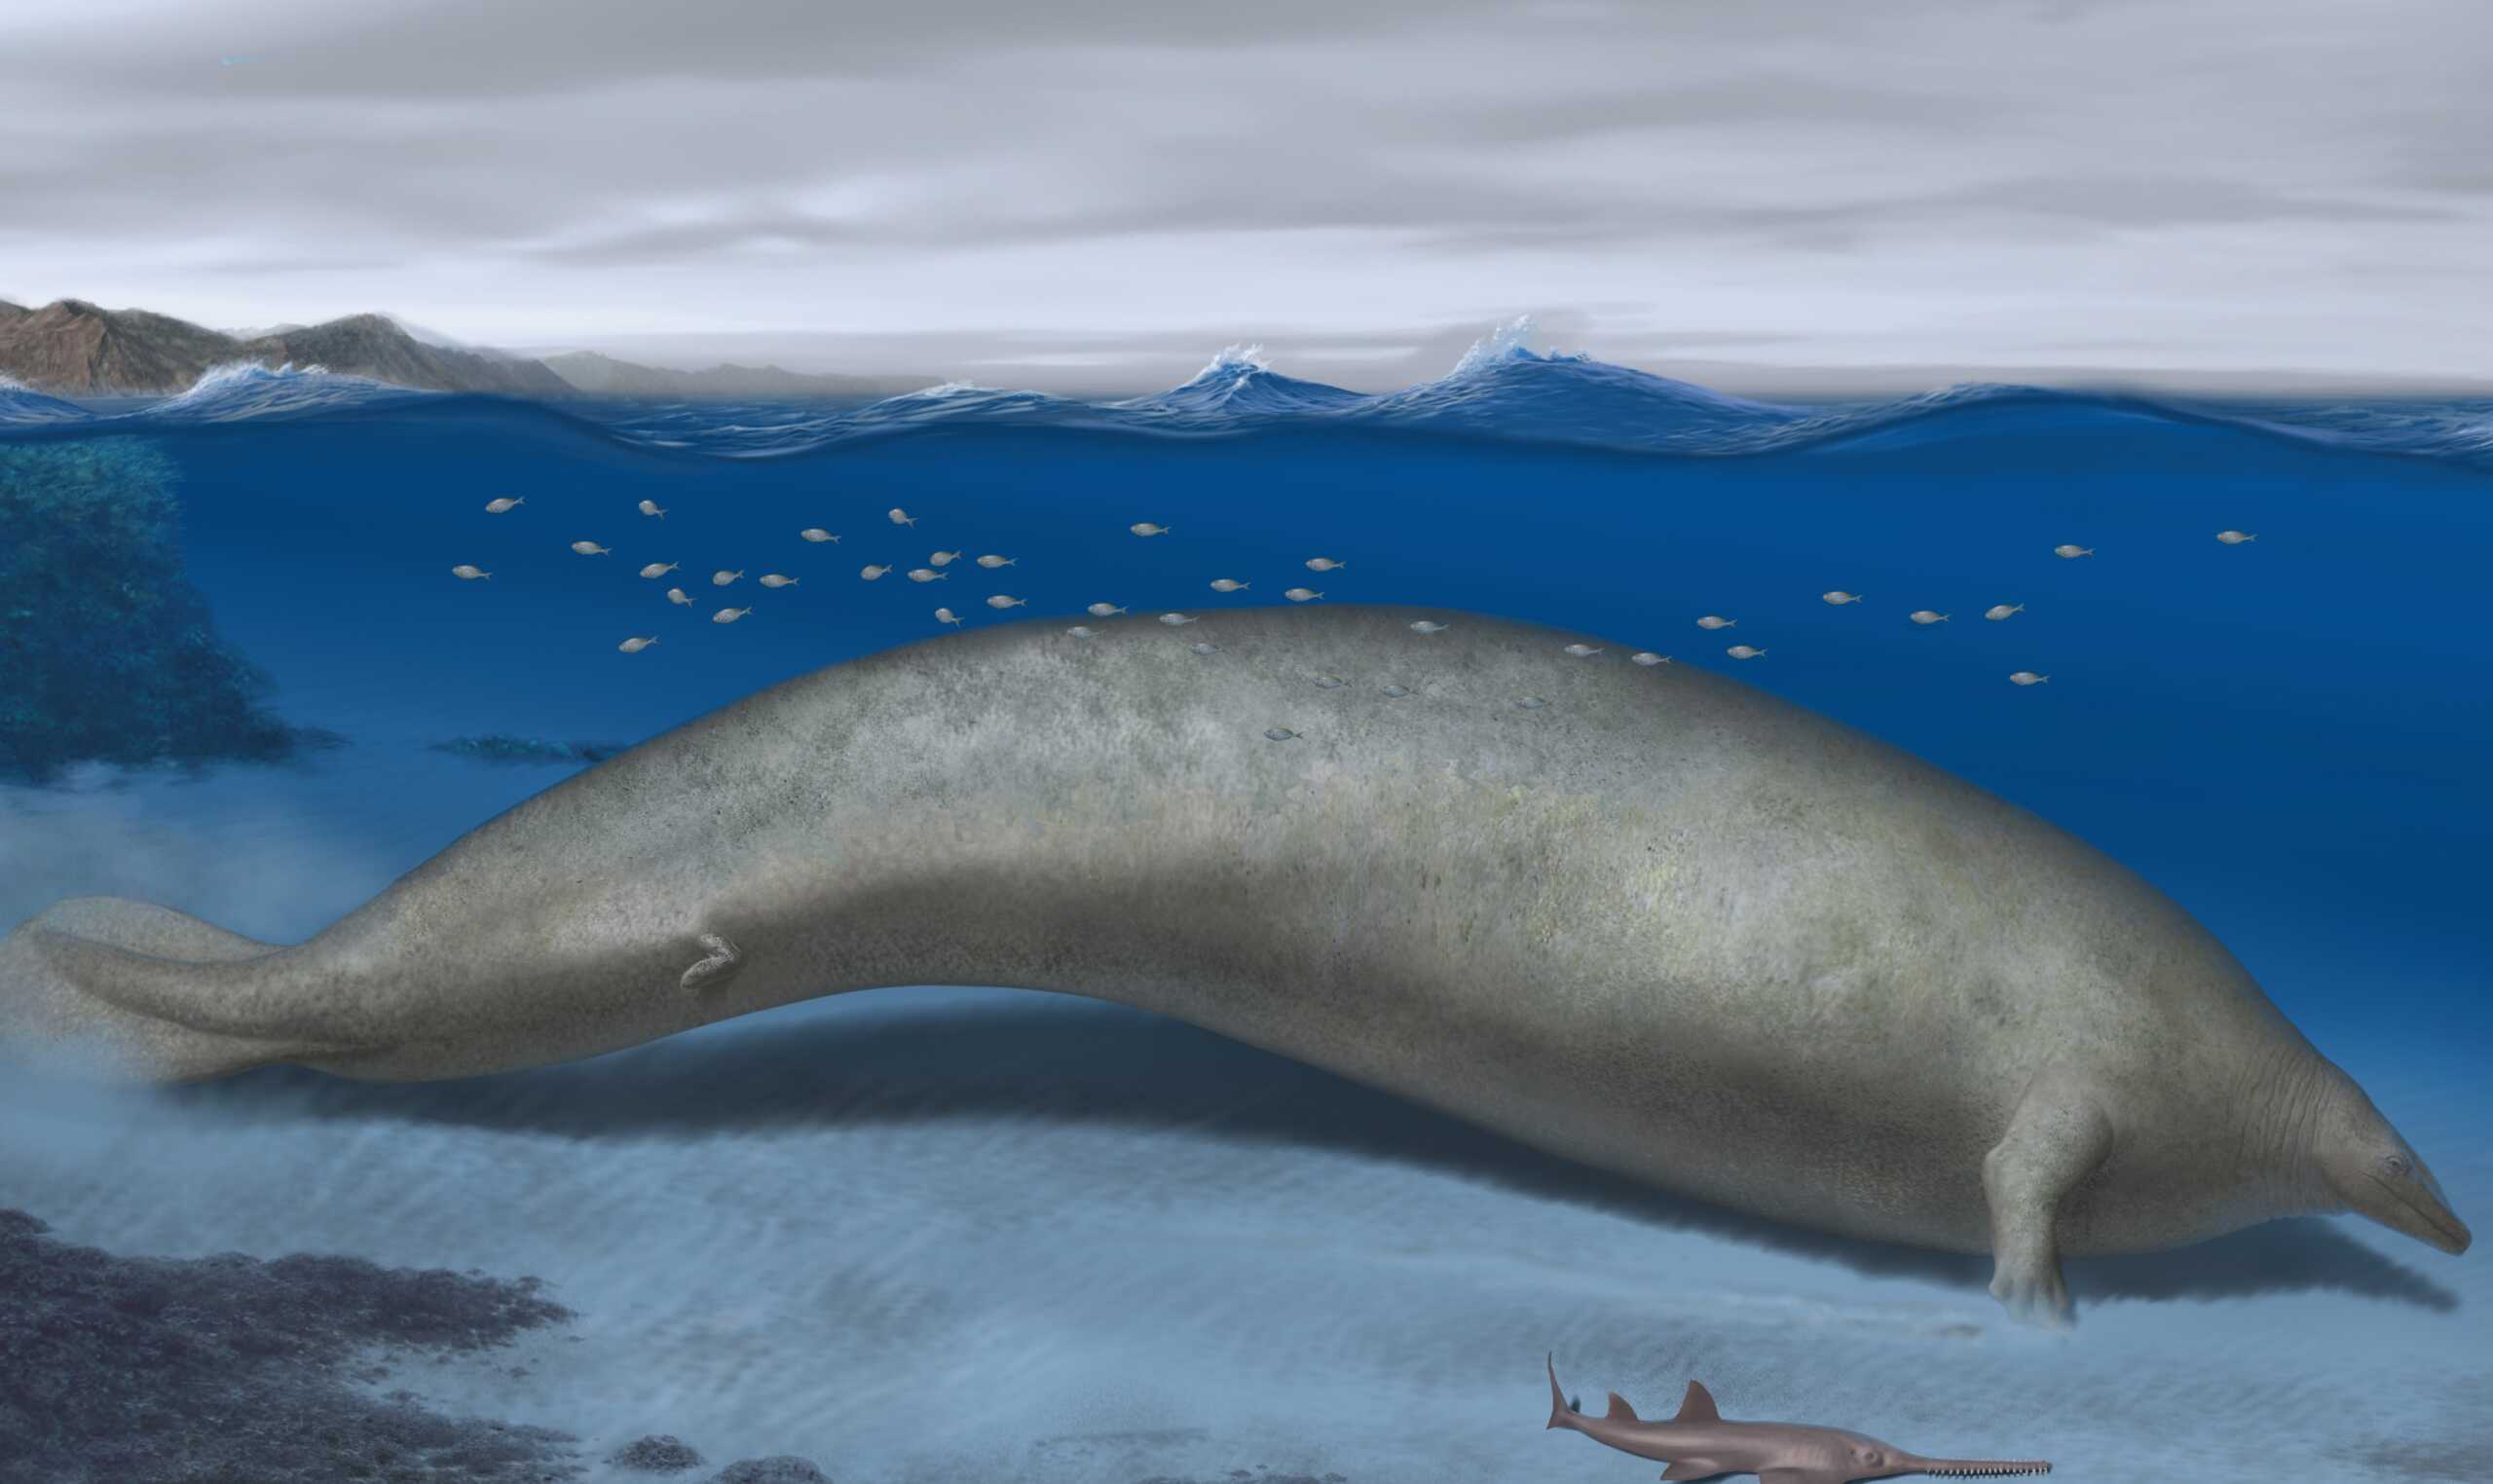 Η φάλαινα Perucetus colossus ηλικίας 39 εκατομμυρίων ετών αποτελεί το βαρύτερο ζώο που έχει ανακαλυφθεί